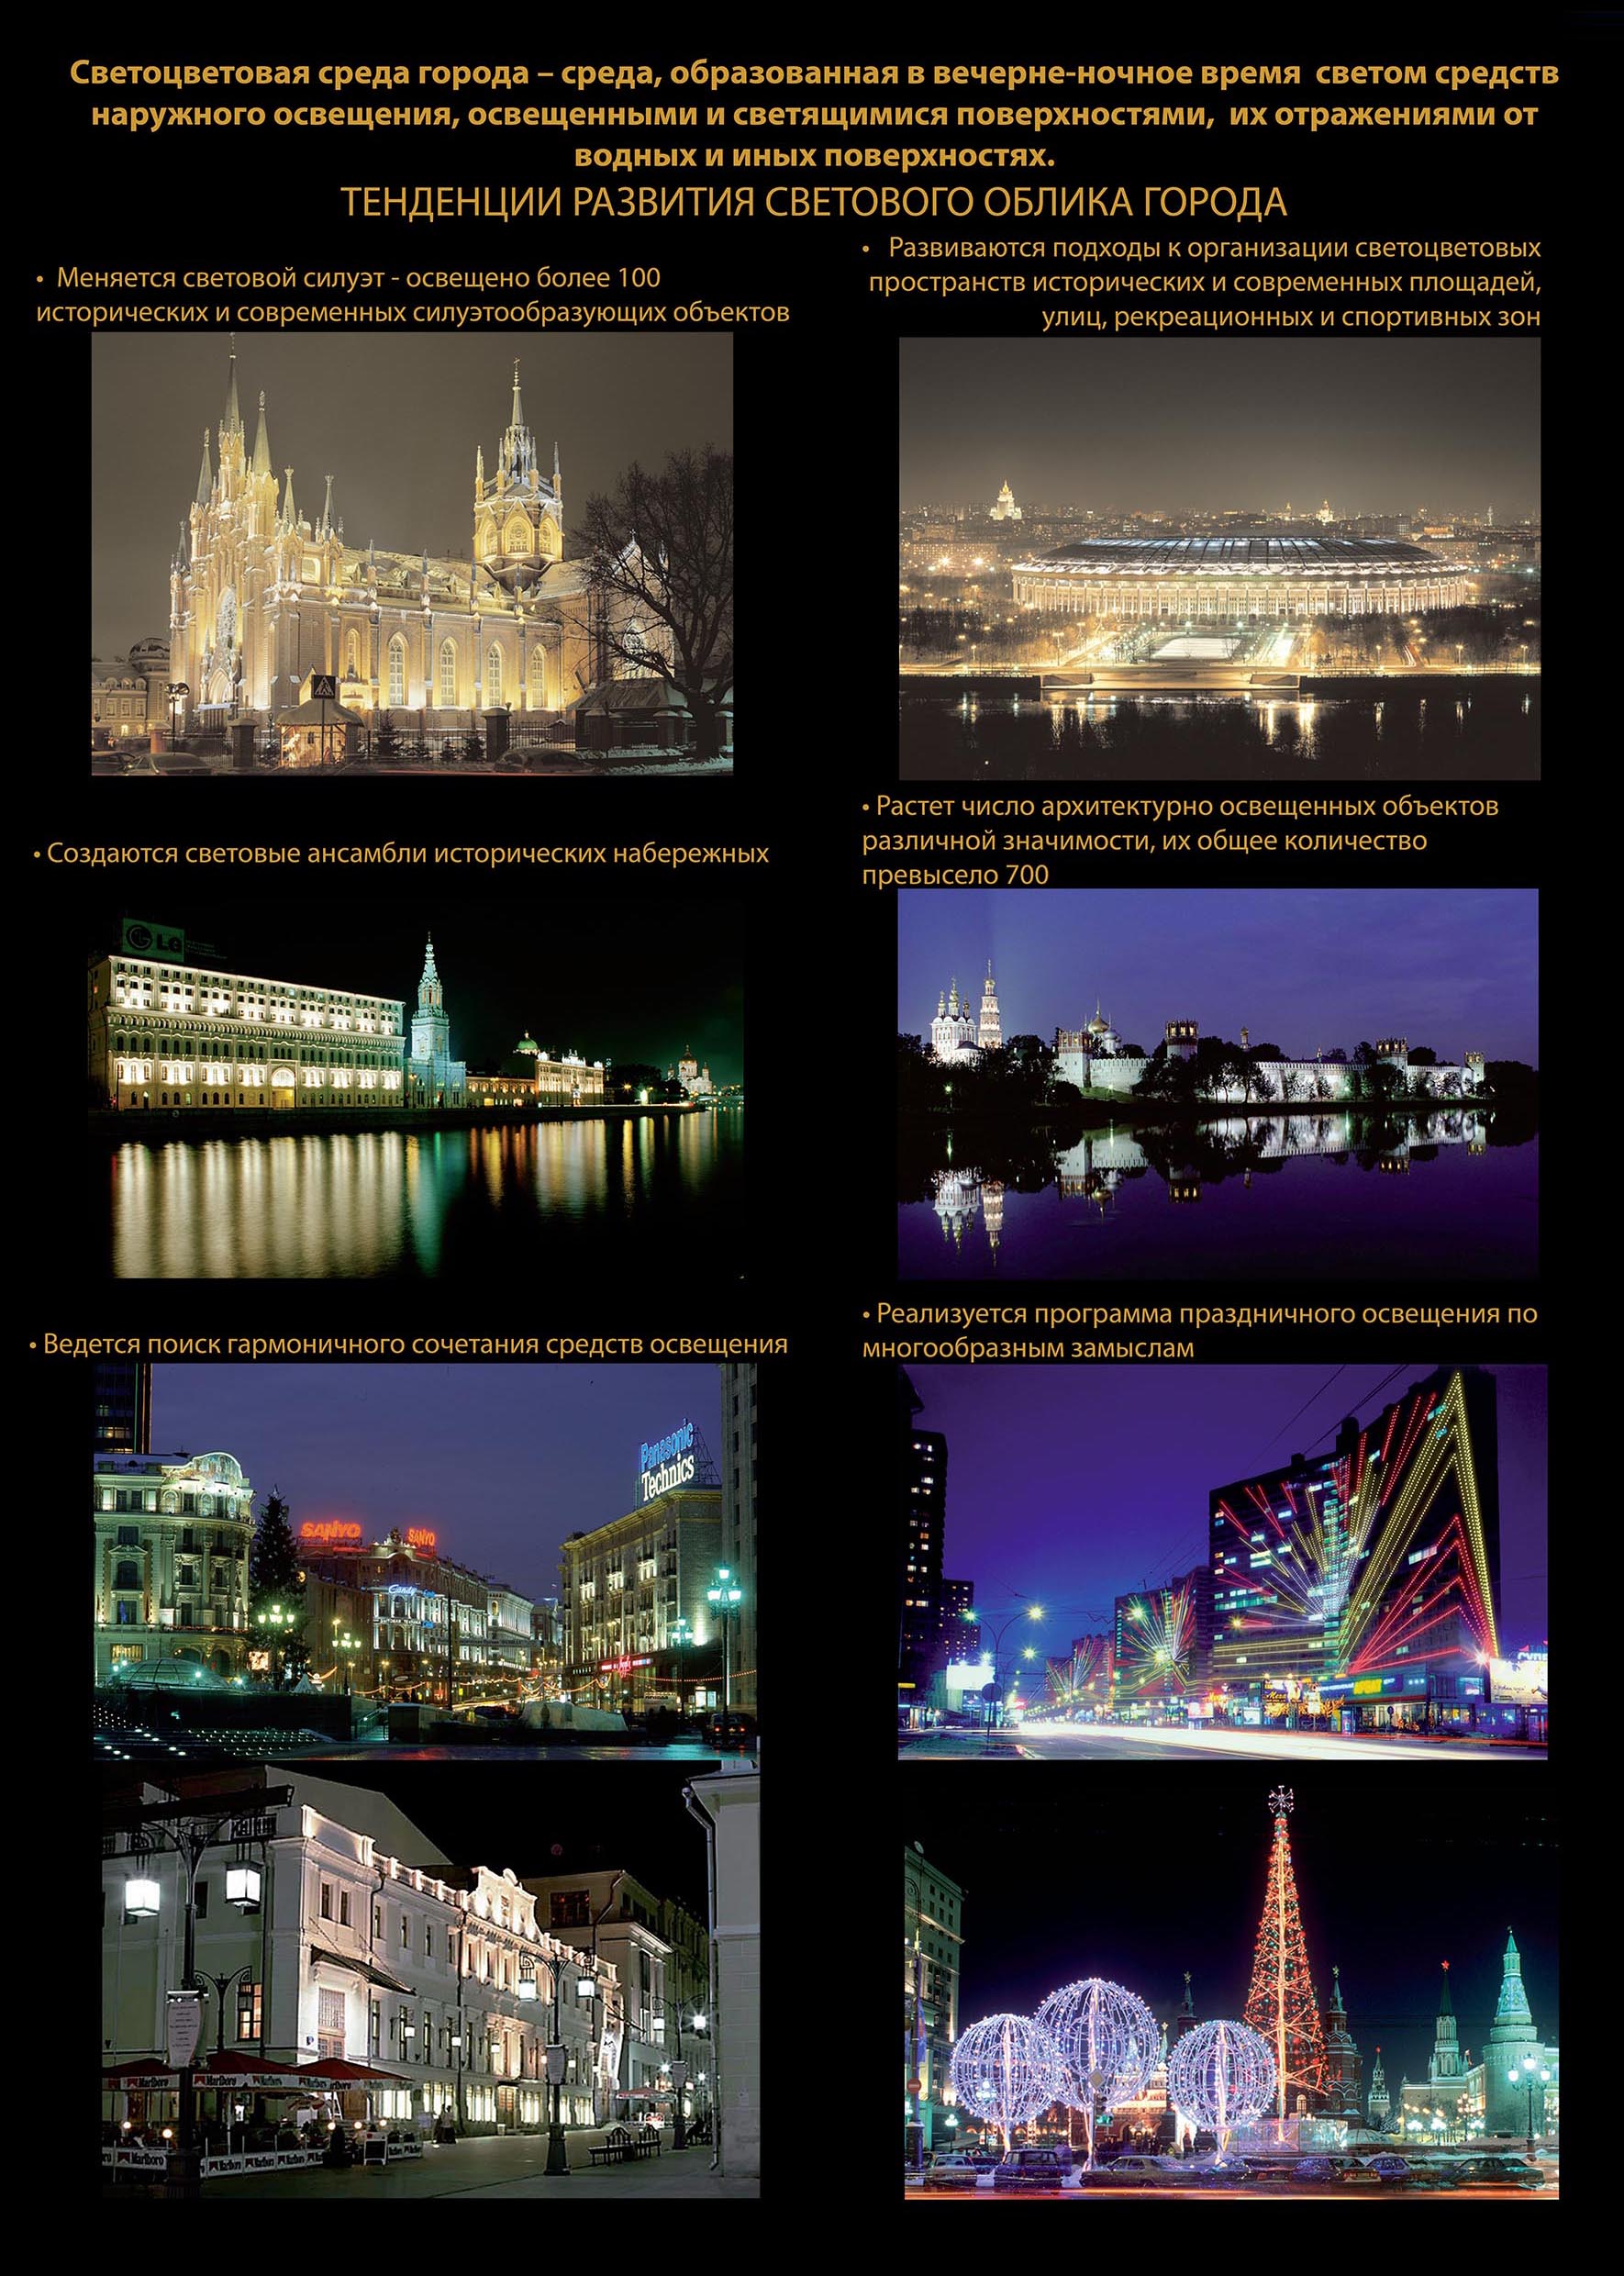 Концепции единой светоцветовой среды города Москвы от 11 ноября 2008 года